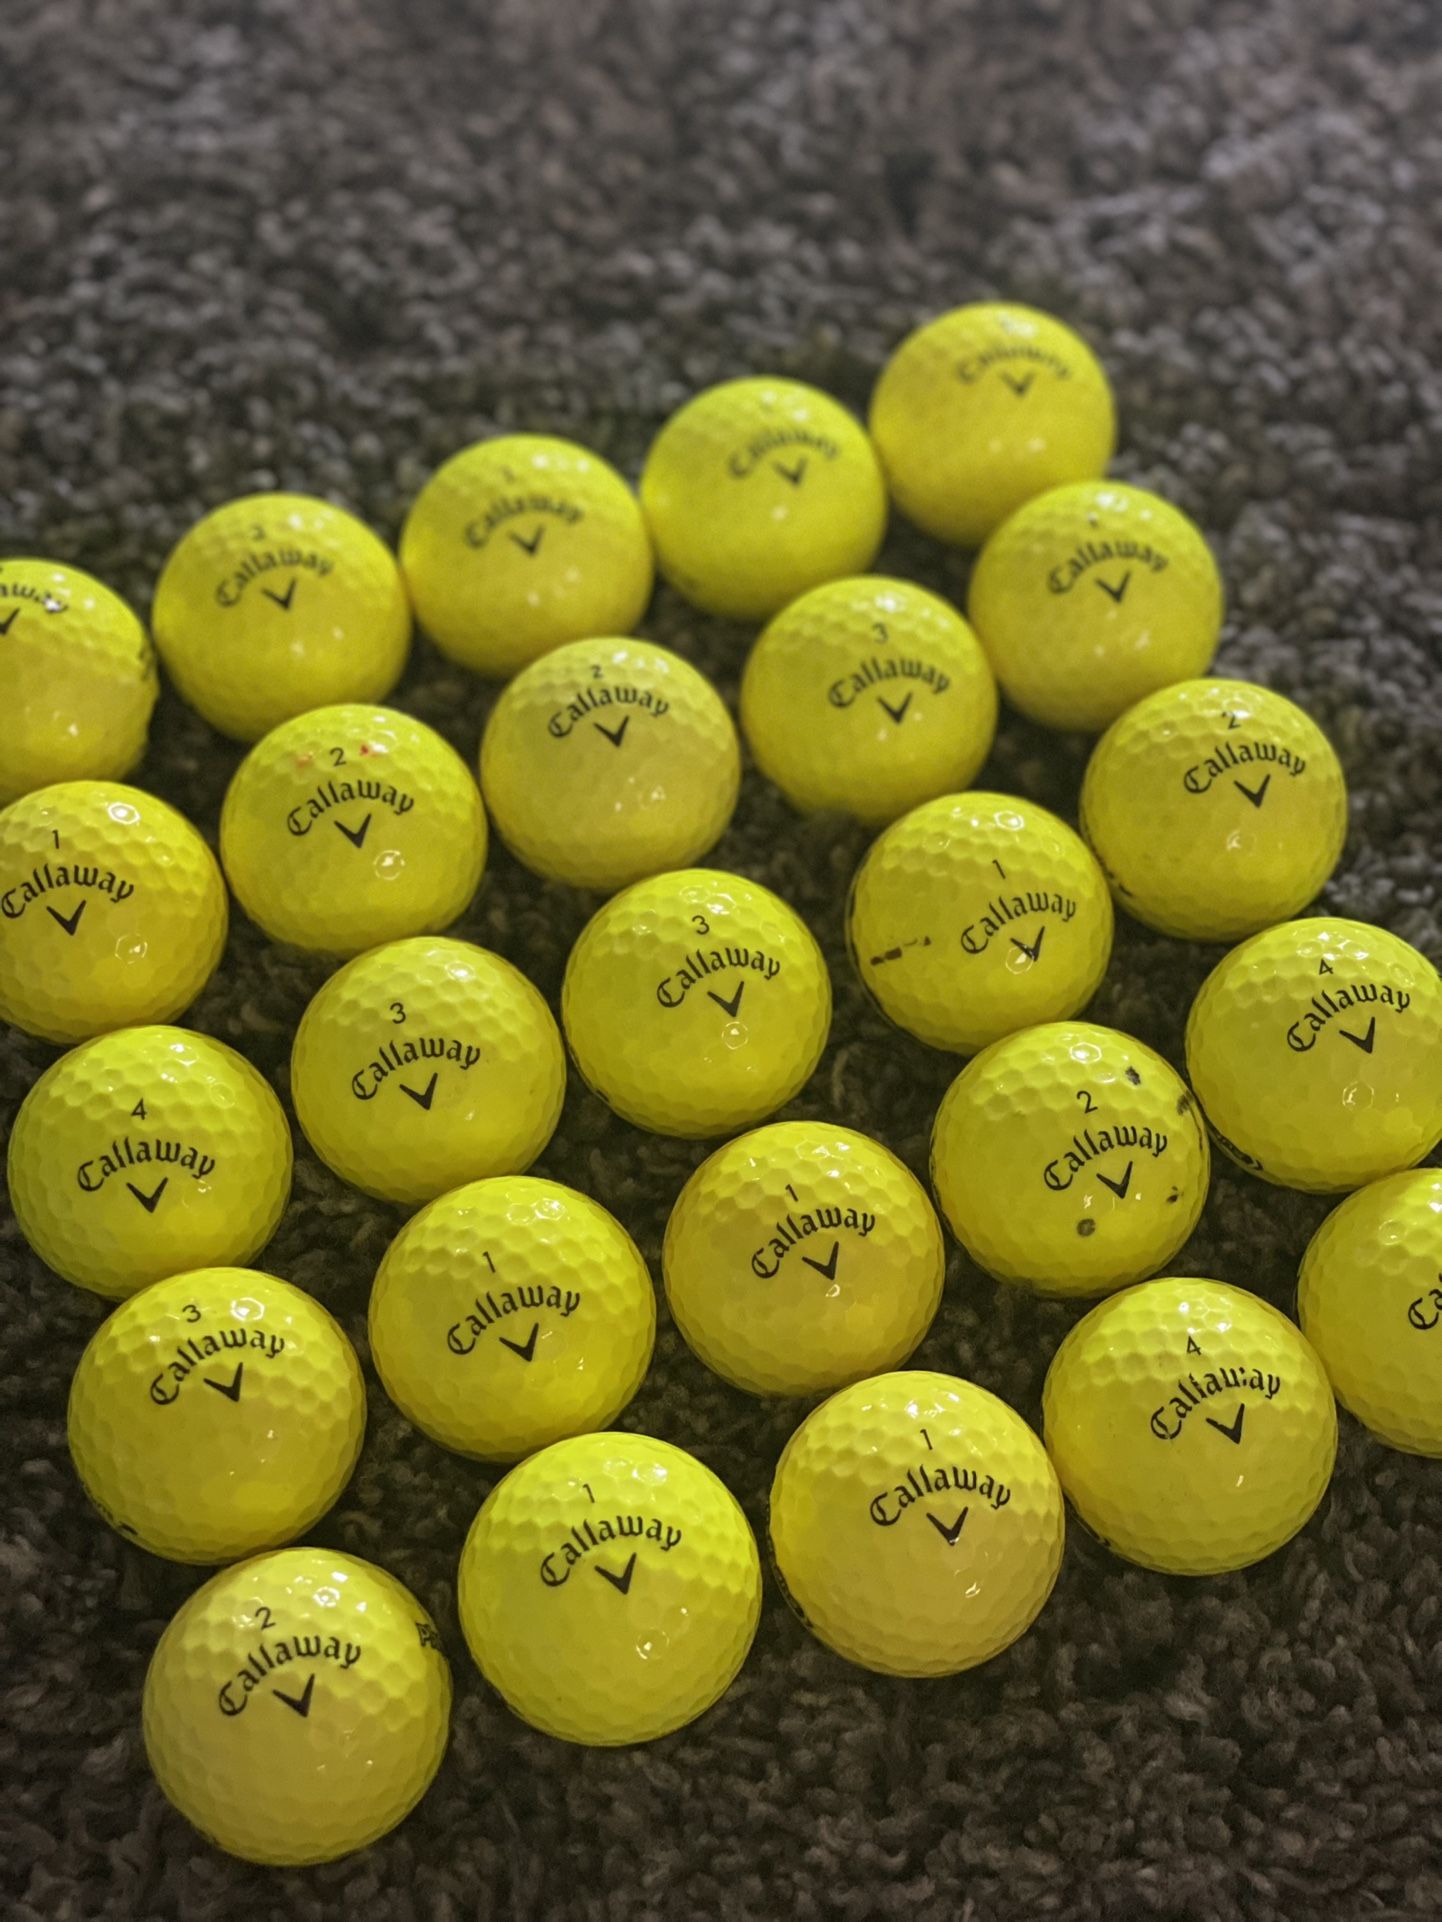 25 Callaway Super Soft Golf Balls